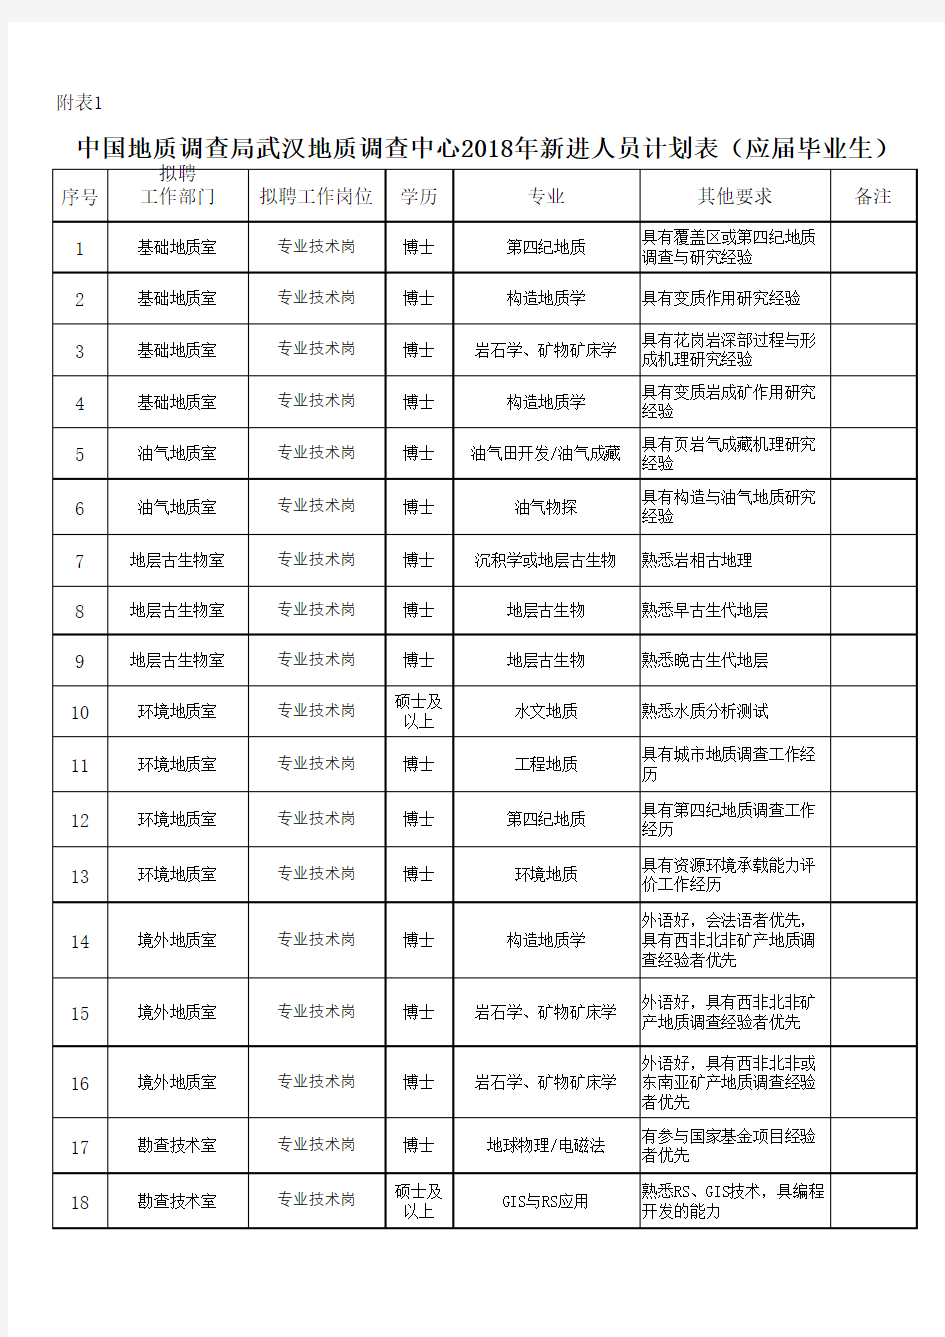 中国地质调查局武汉地质调查中心2018年新进人员计划表(应届毕业生)